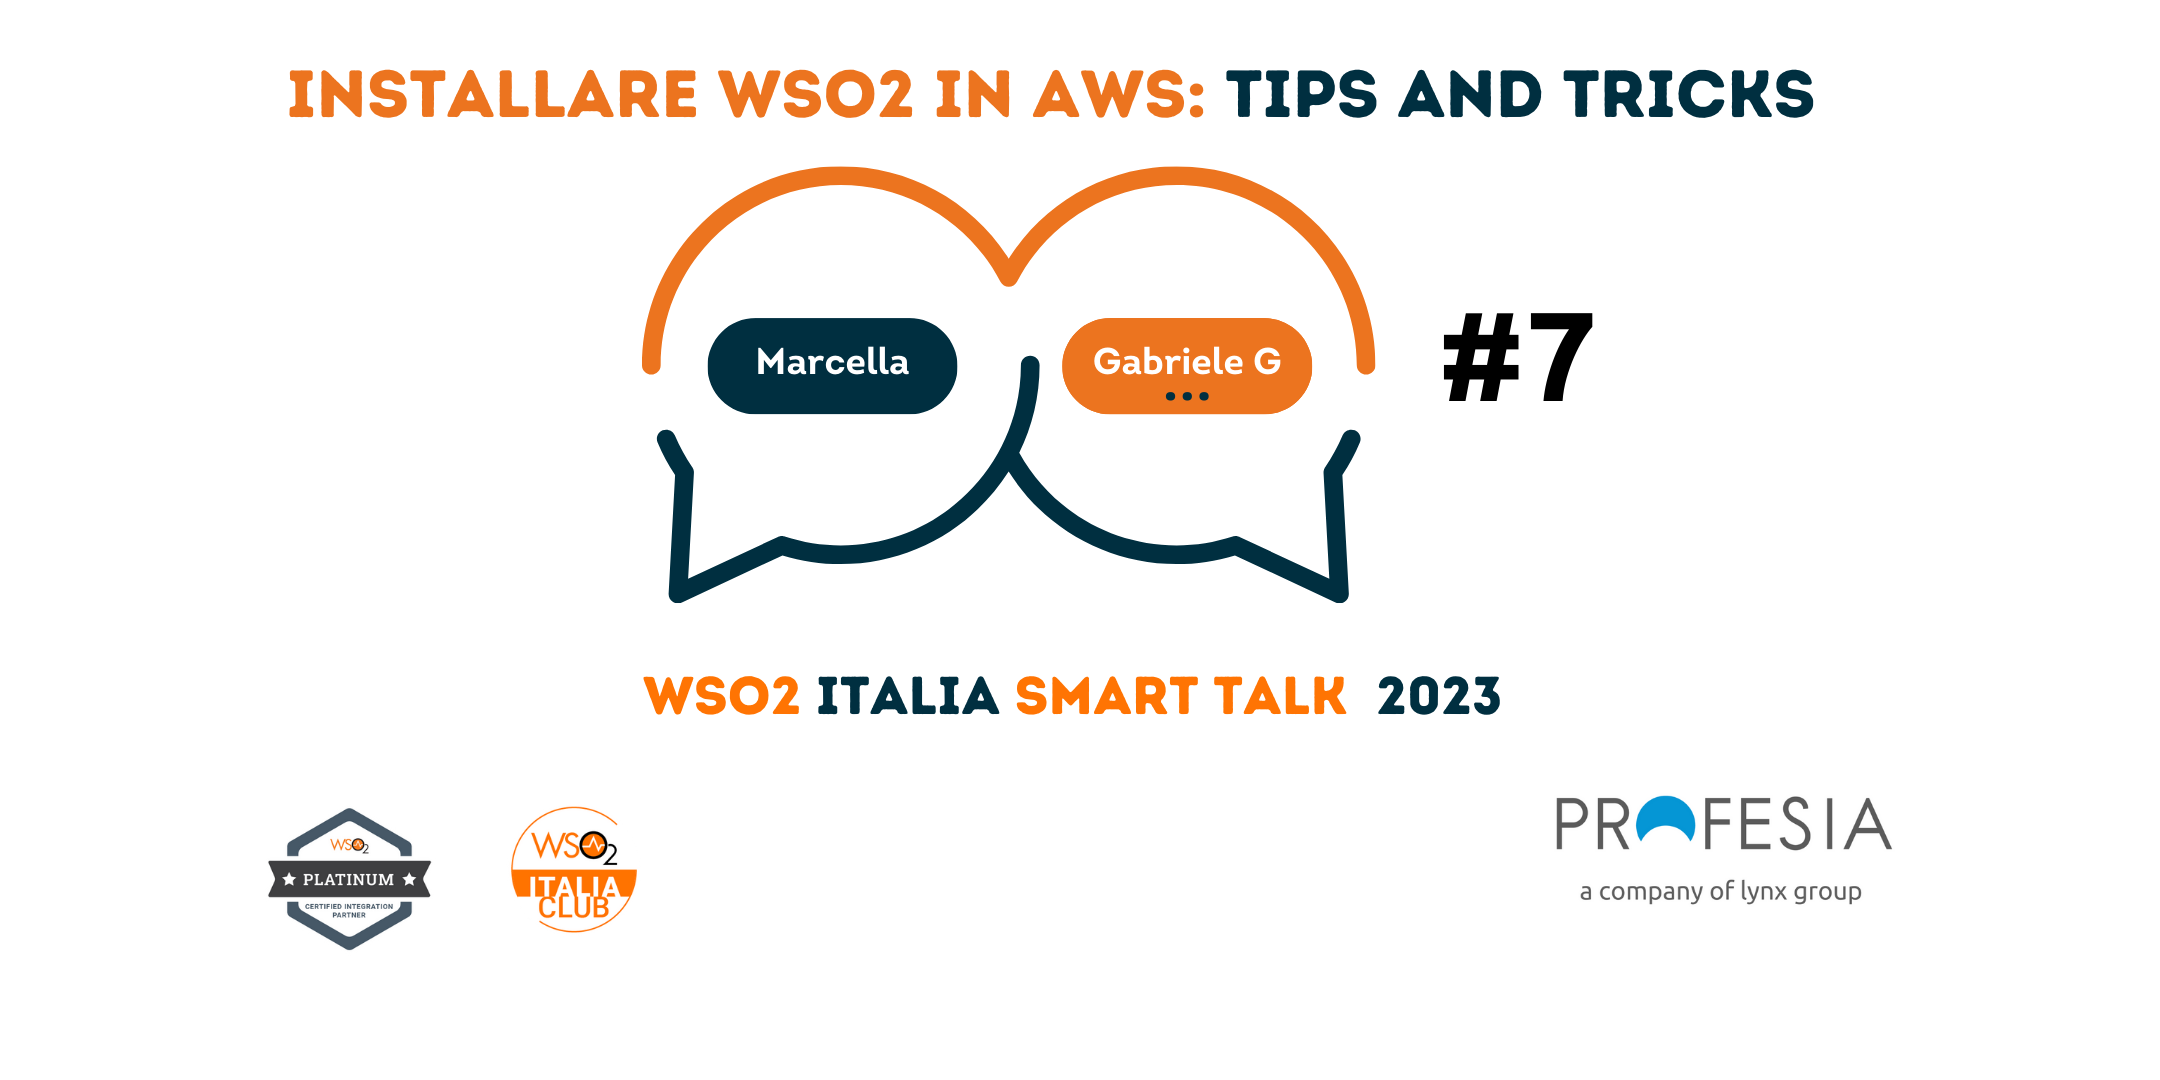 Come installare WSO2 in AWS: tips and tricks